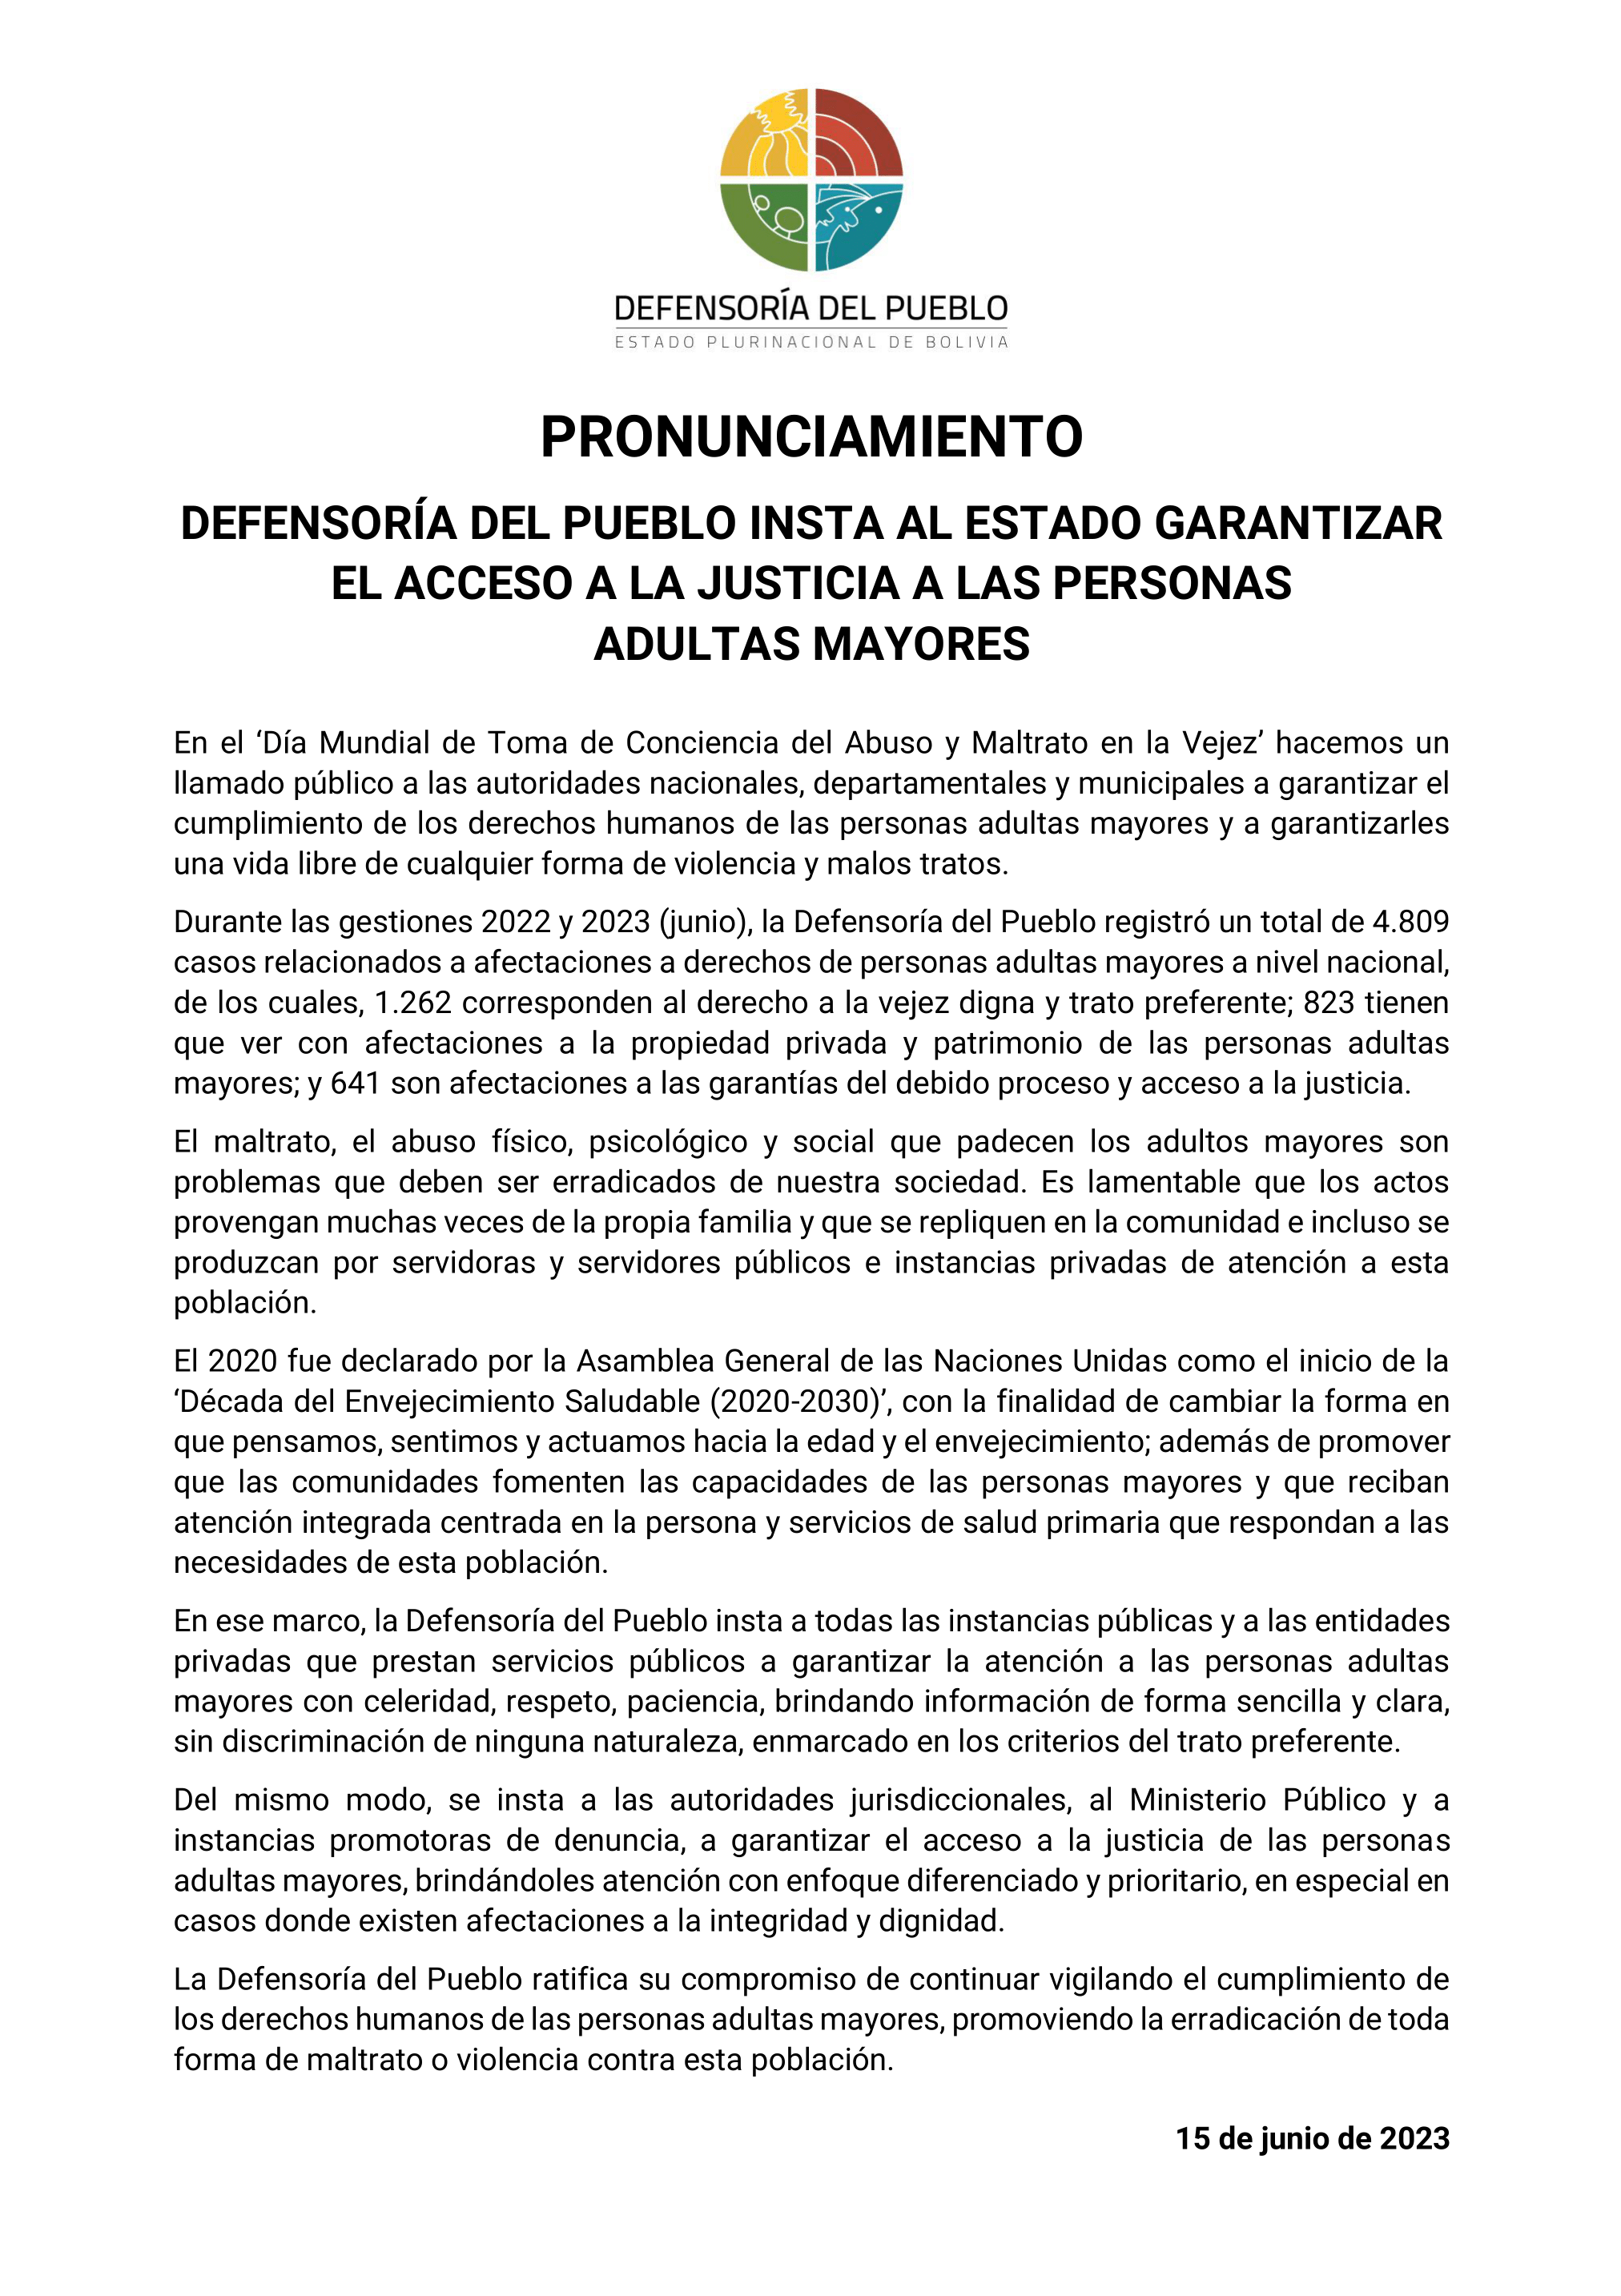 DEFENSORÍA DEL PUEBLO INSTA AL ESTADO GARANTIZAR EL ACCESO A LA JUSTICIA A LAS PERSONAS ADULTAS MAYORES